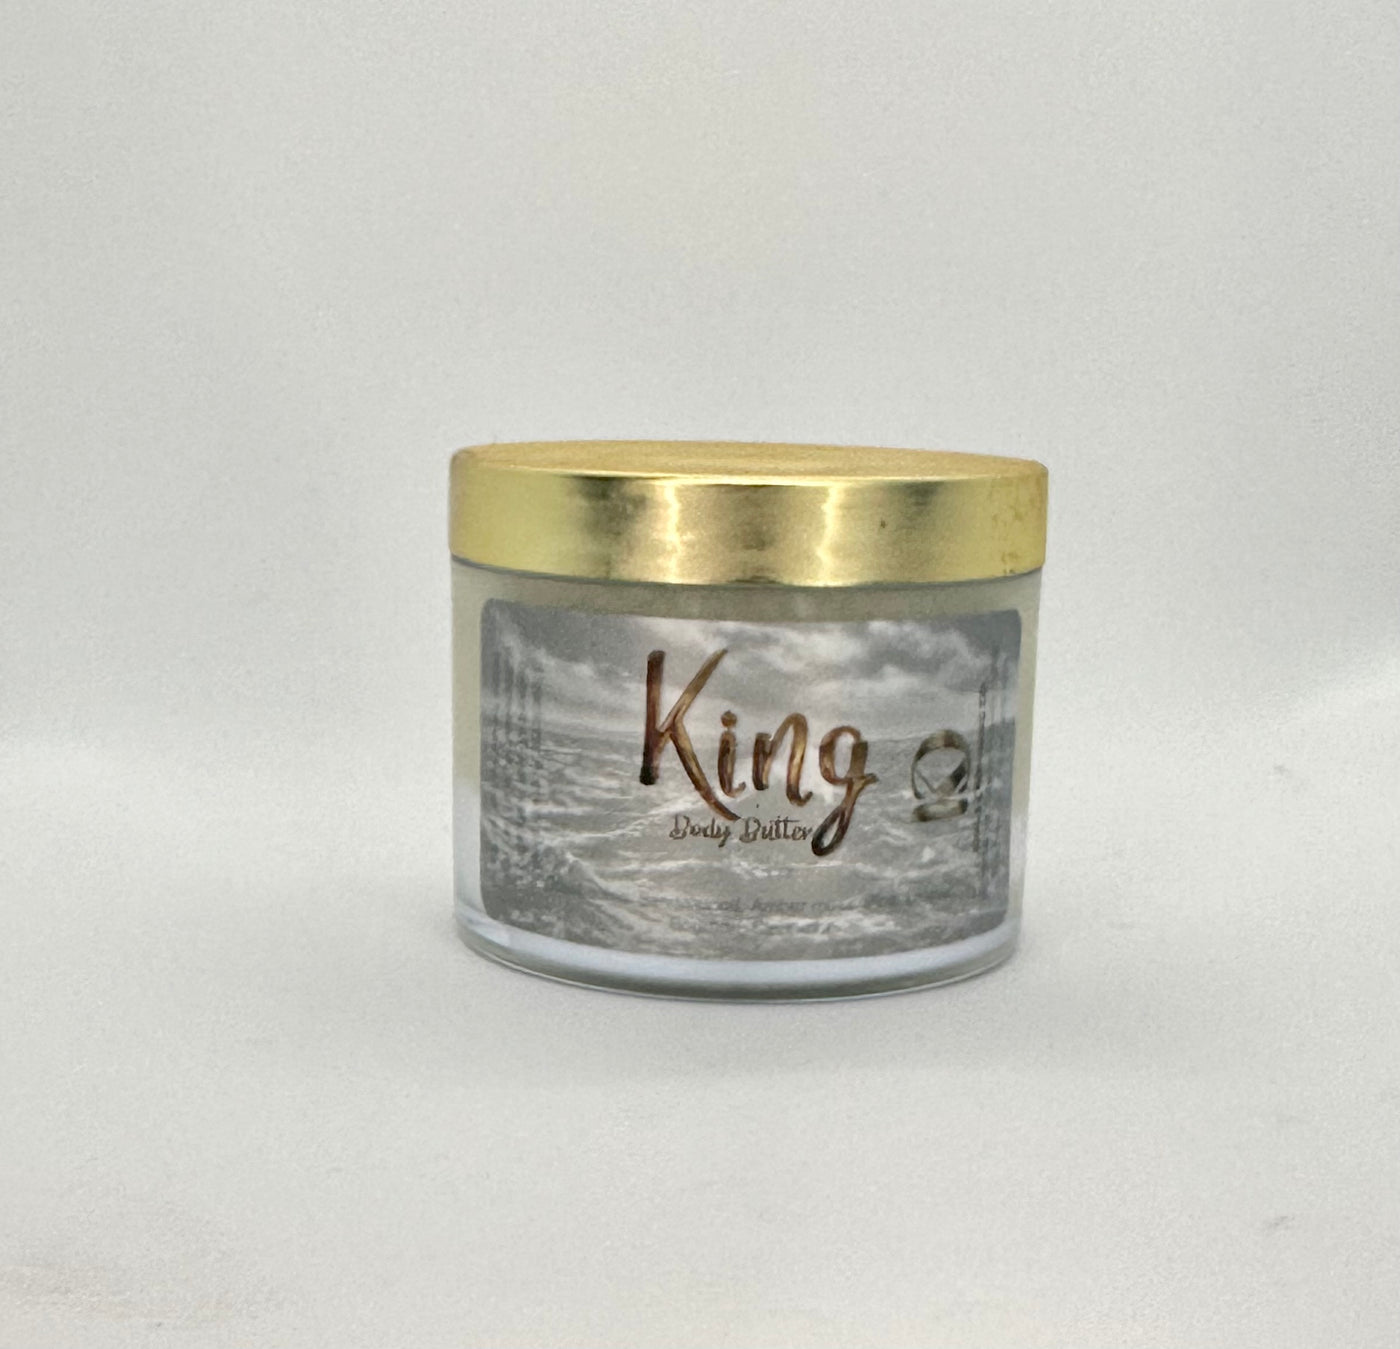 Mens Skin Restoring Fragranced “King” Organic Body Butter (4 oz)